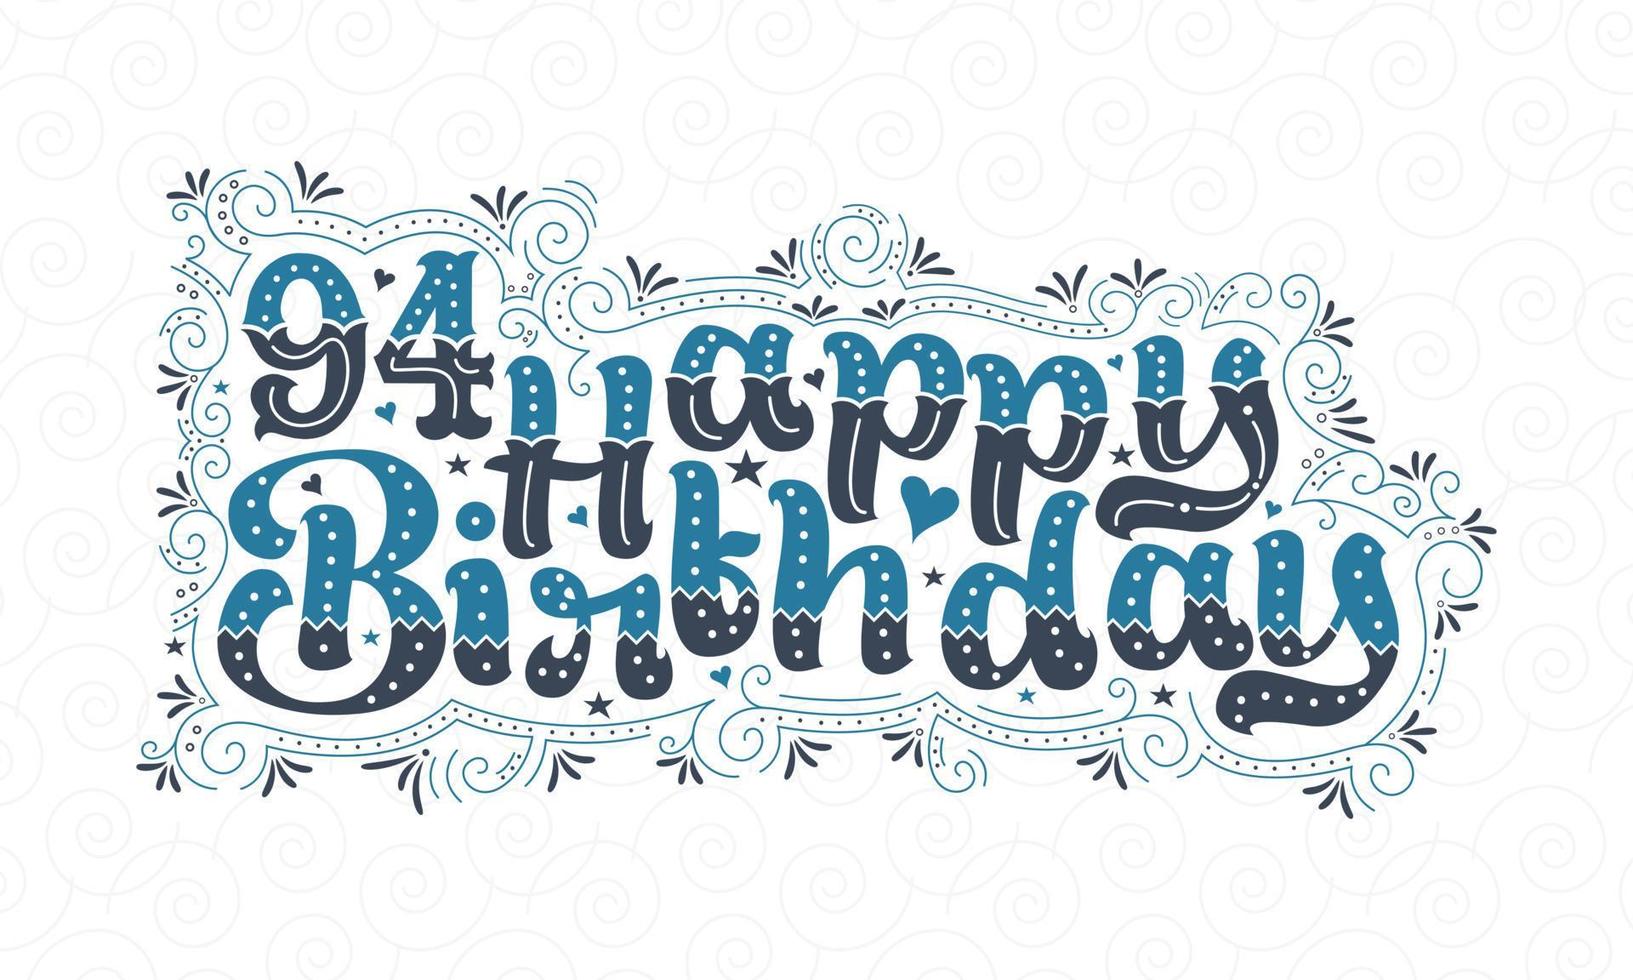 94. Happy Birthday Schriftzug, 94 Jahre Geburtstag schönes Typografie-Design mit blauen und schwarzen Punkten, Linien und Blättern. vektor